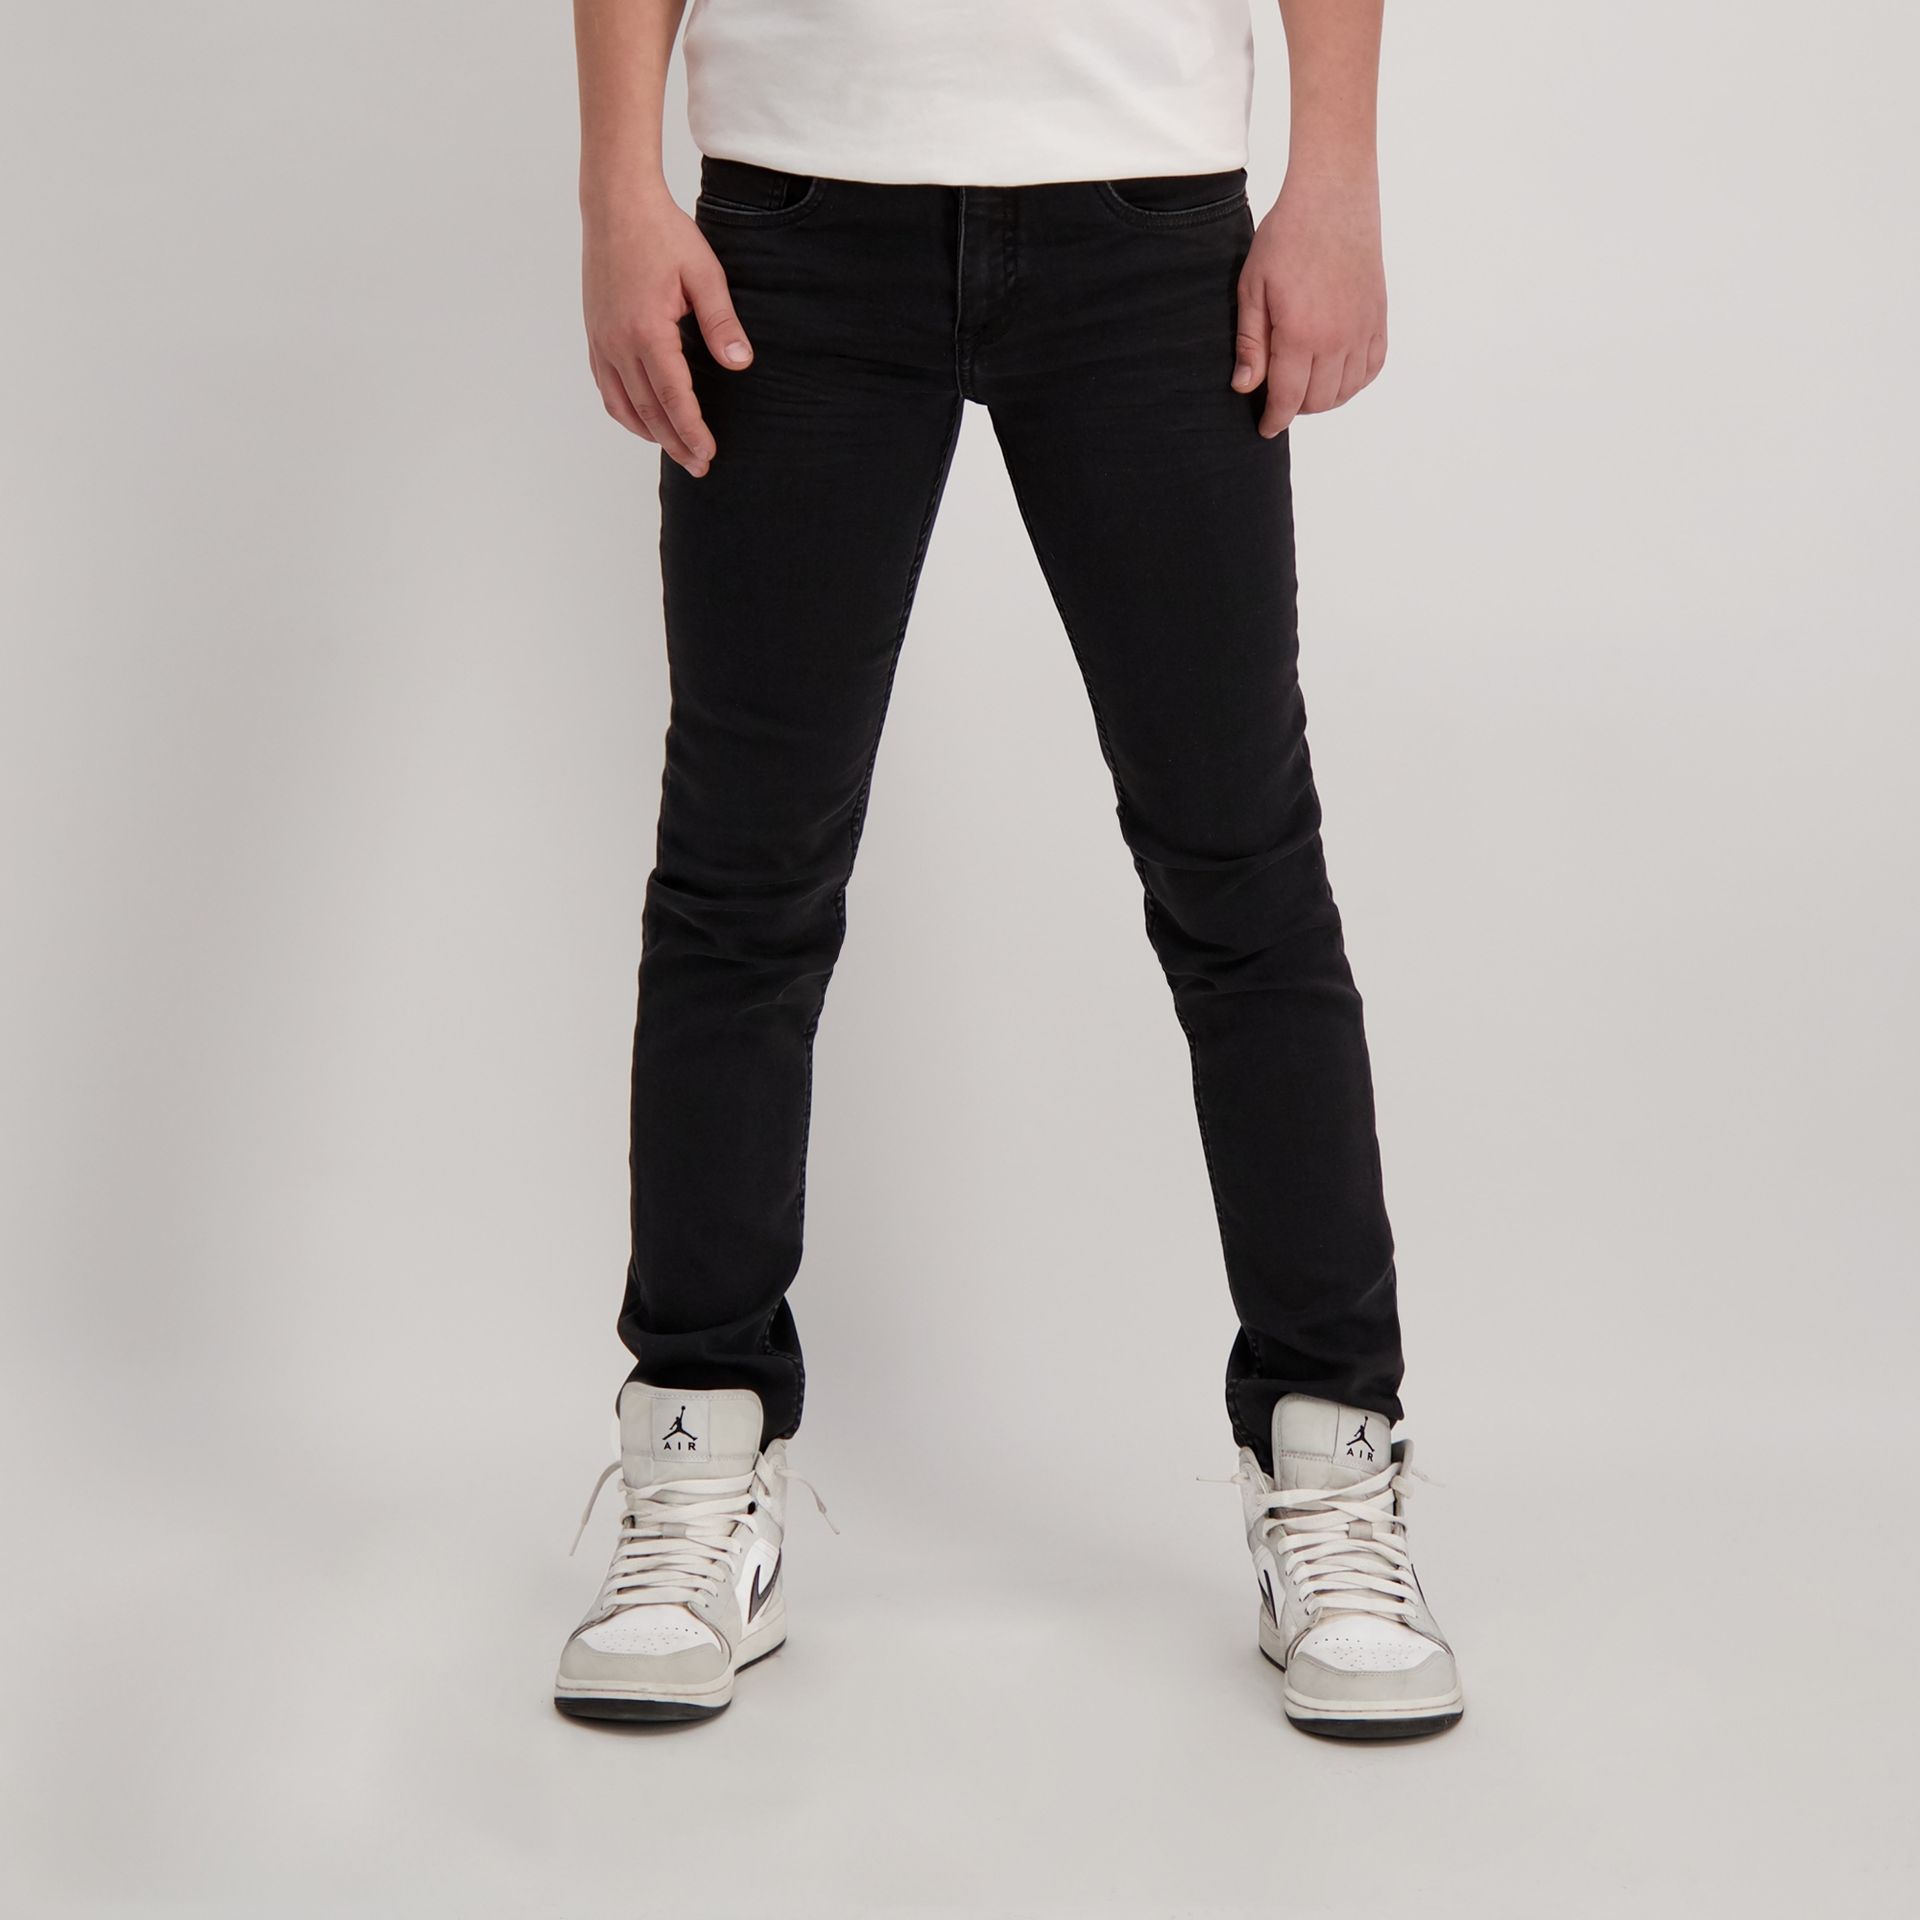 Cars jeans Jeans Prinze Jr. Regular fit 41 black used 2900138933011